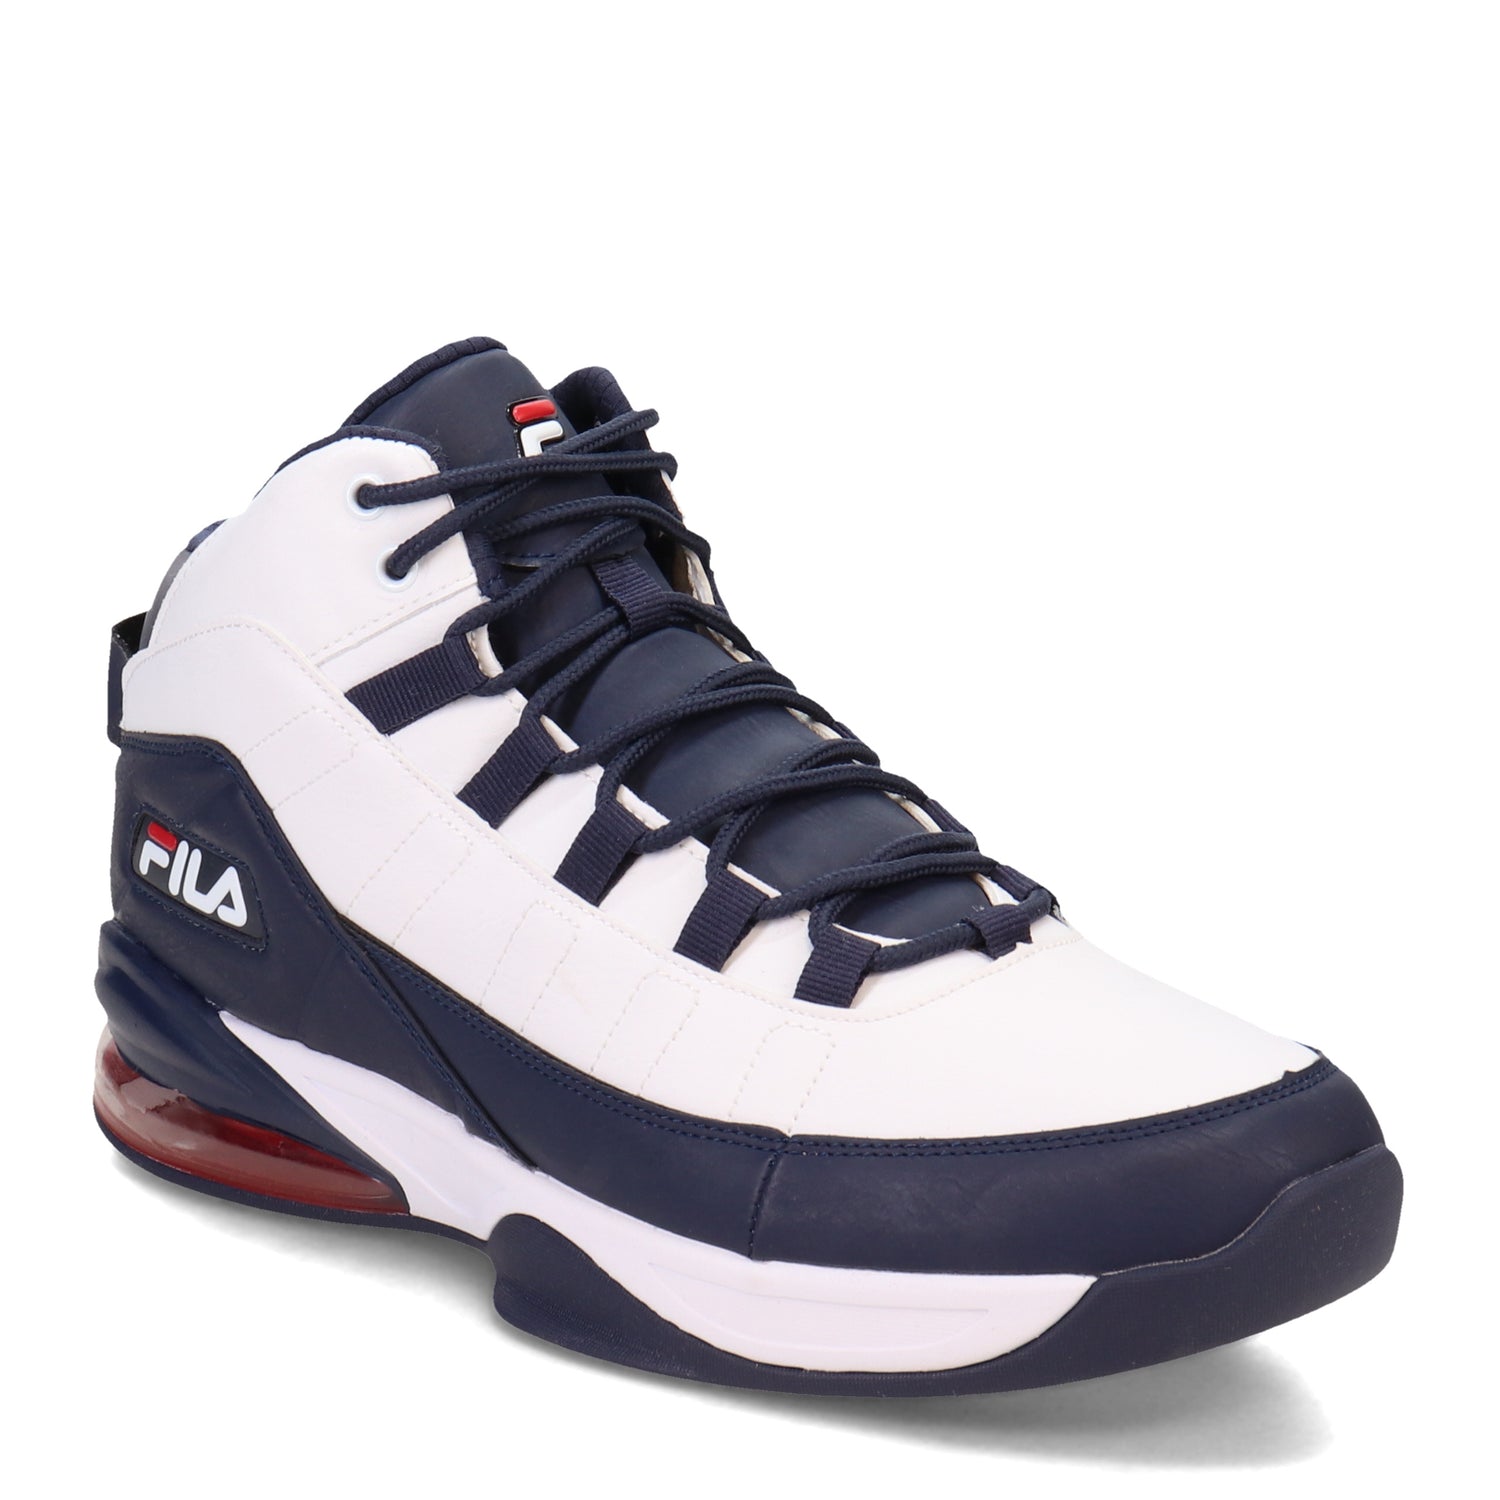 Fila Basketball Shoe – Peltz Shoes